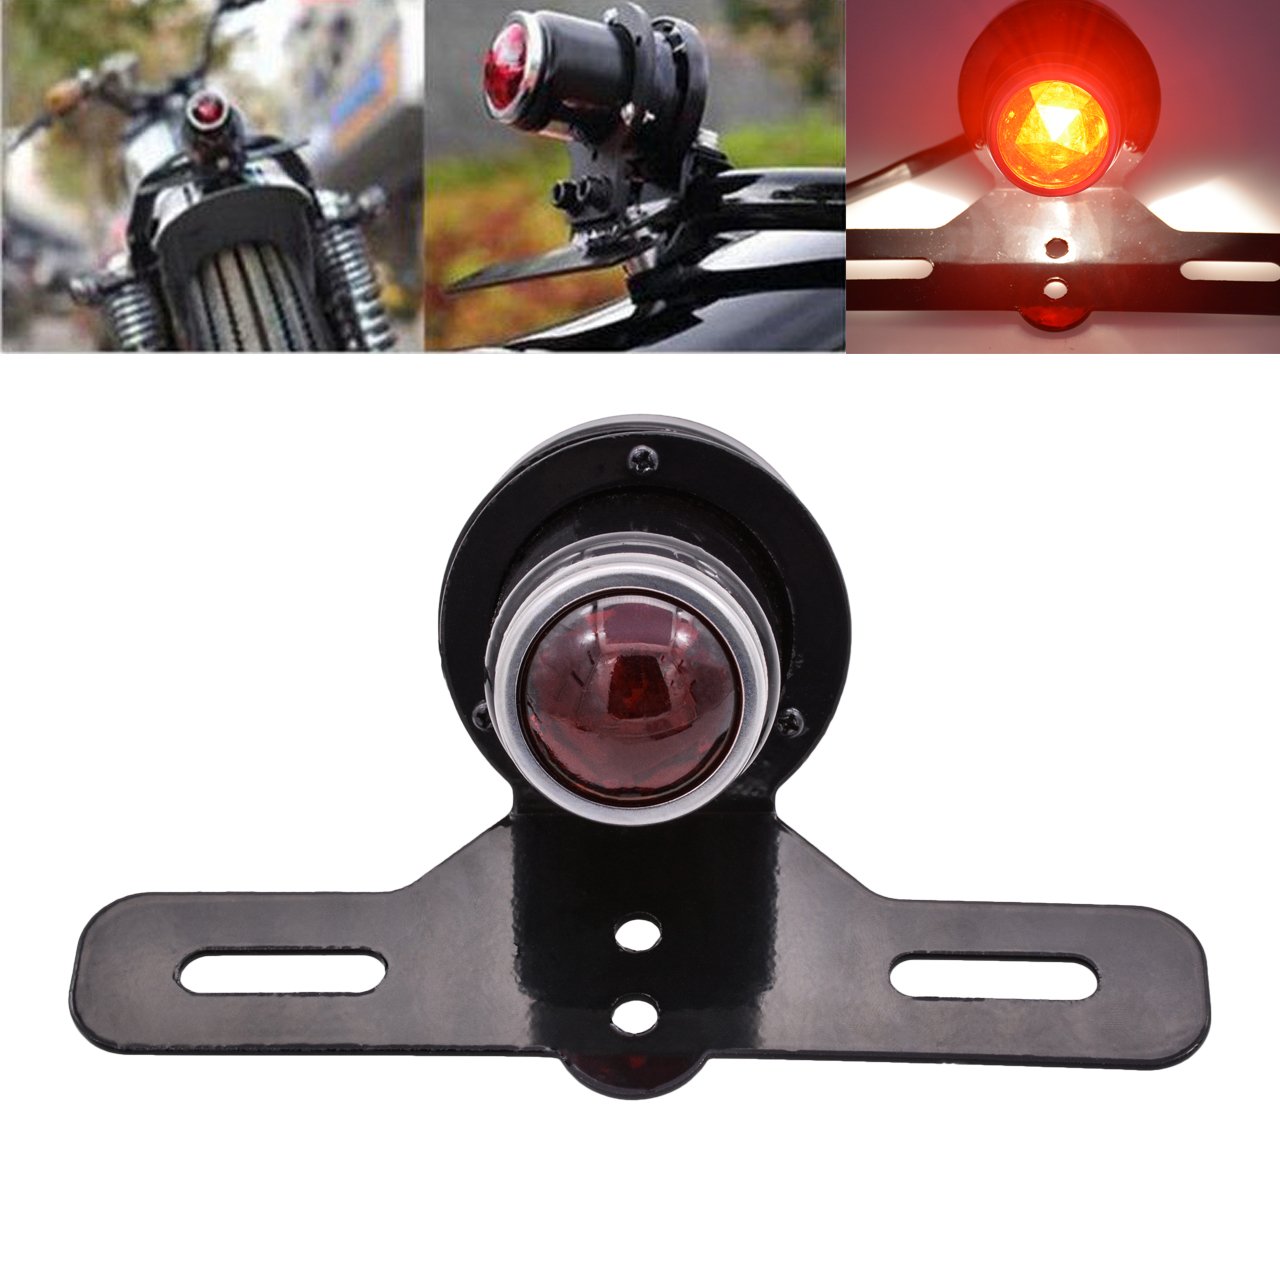 KATUR Motorrad-Kennzeichenhalter Bremslicht Rücklicht Lampe für Harley Chopper Cruiser Racer Bobber Cafe Custom